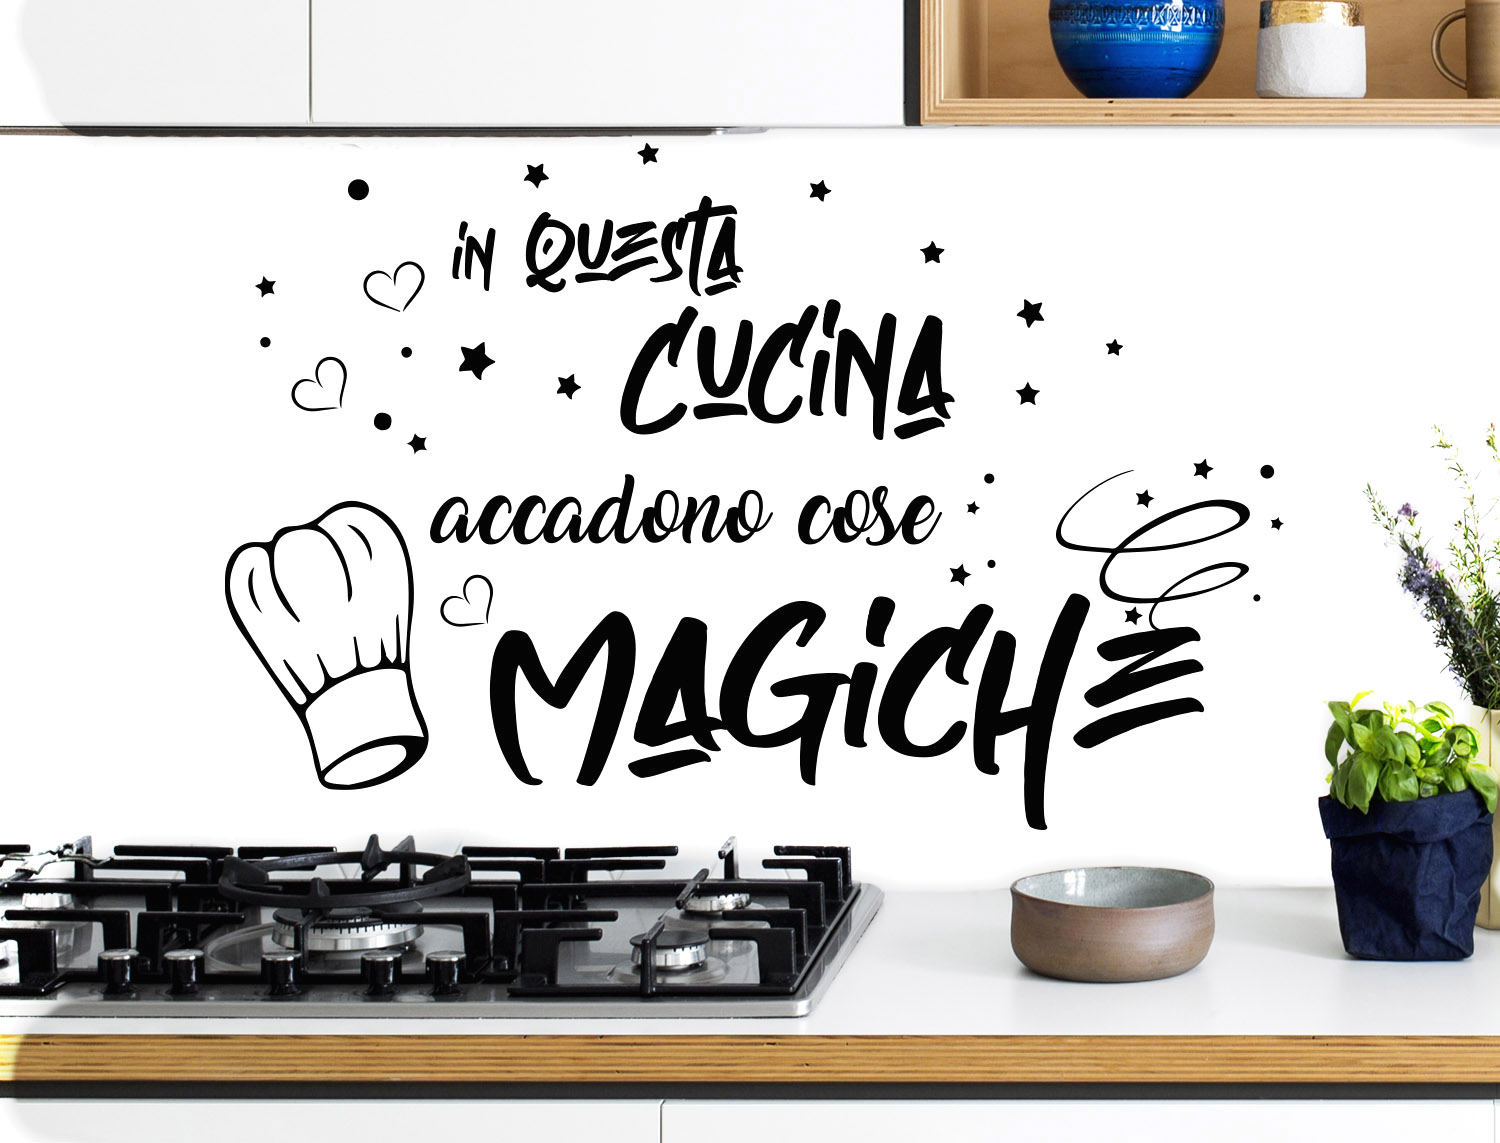 Adesivi Murali Cucina in questa cucina accadono cose magiche Frasi scritte  italiano wall stickers kitchen decorazione casa adesivi da parete adesivo